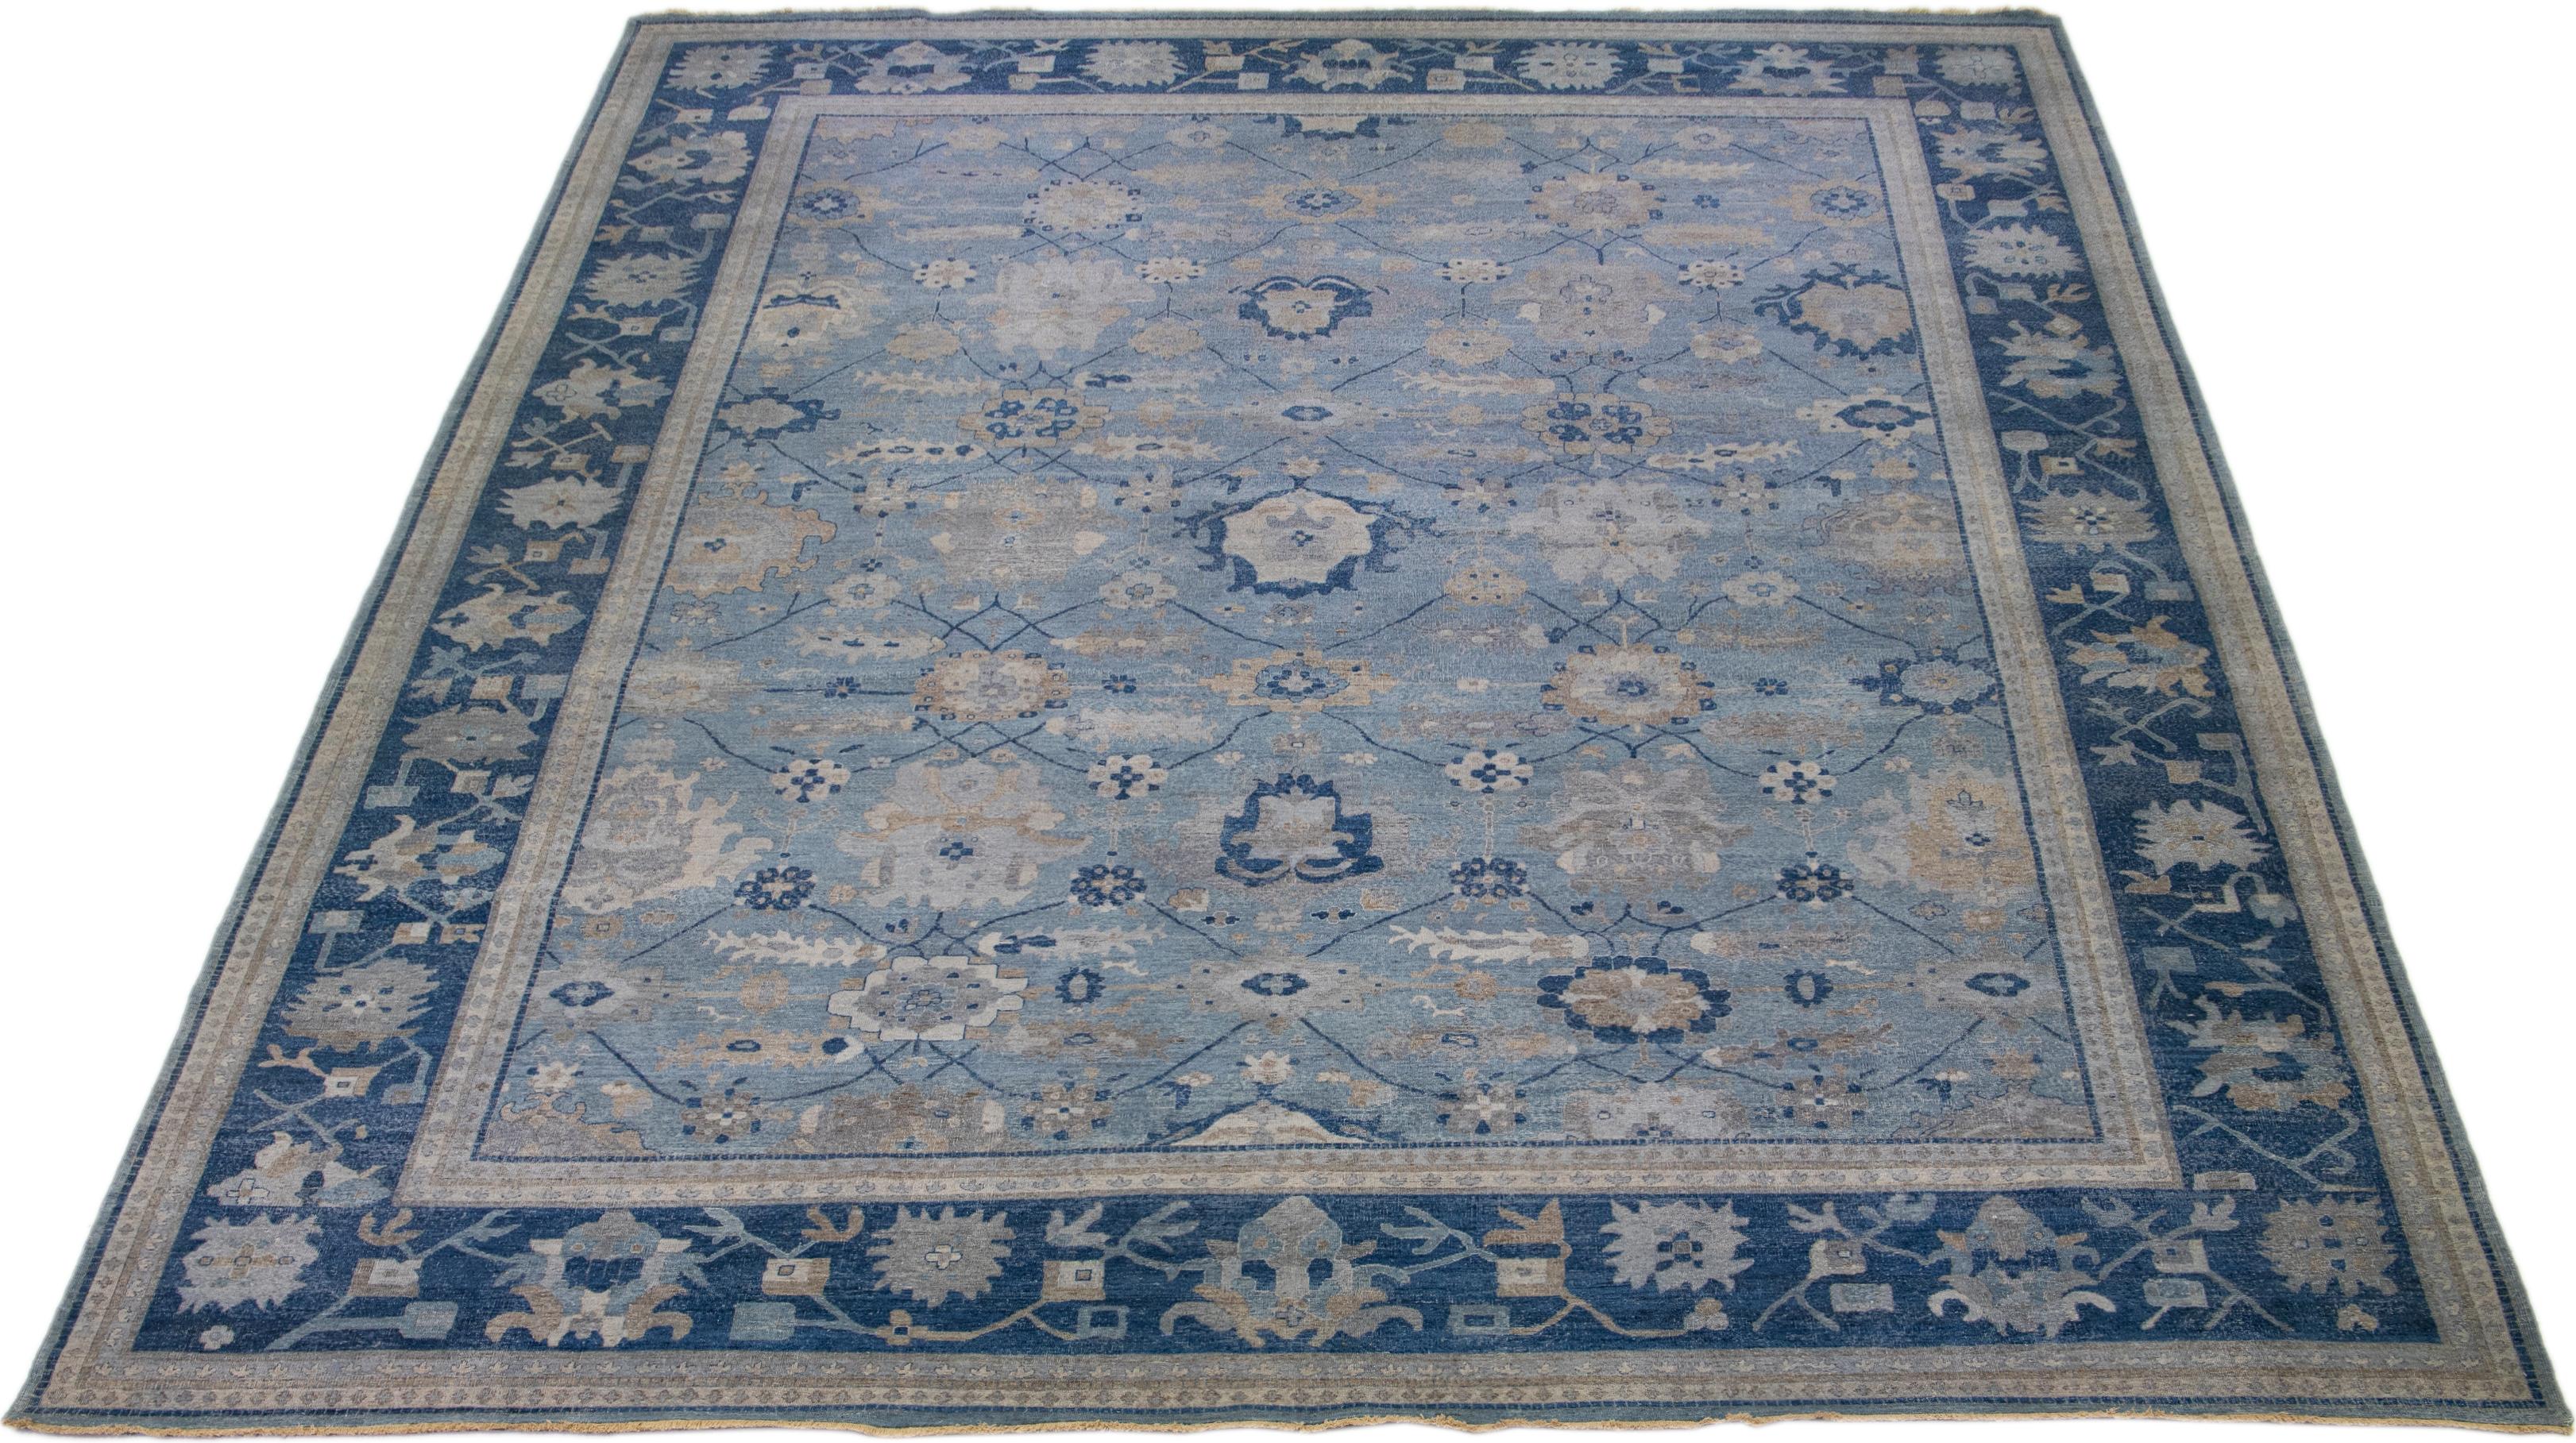 Die Artisan-Linie von Apadana bringt einen exquisiten antiken Stil in jeden Raum. Dieser handgeknüpfte Teppich zeigt ein wunderschönes florales Allover-Muster mit blauer Farbgebung und mehrfarbigen Akzenten. Es ist 14' 10